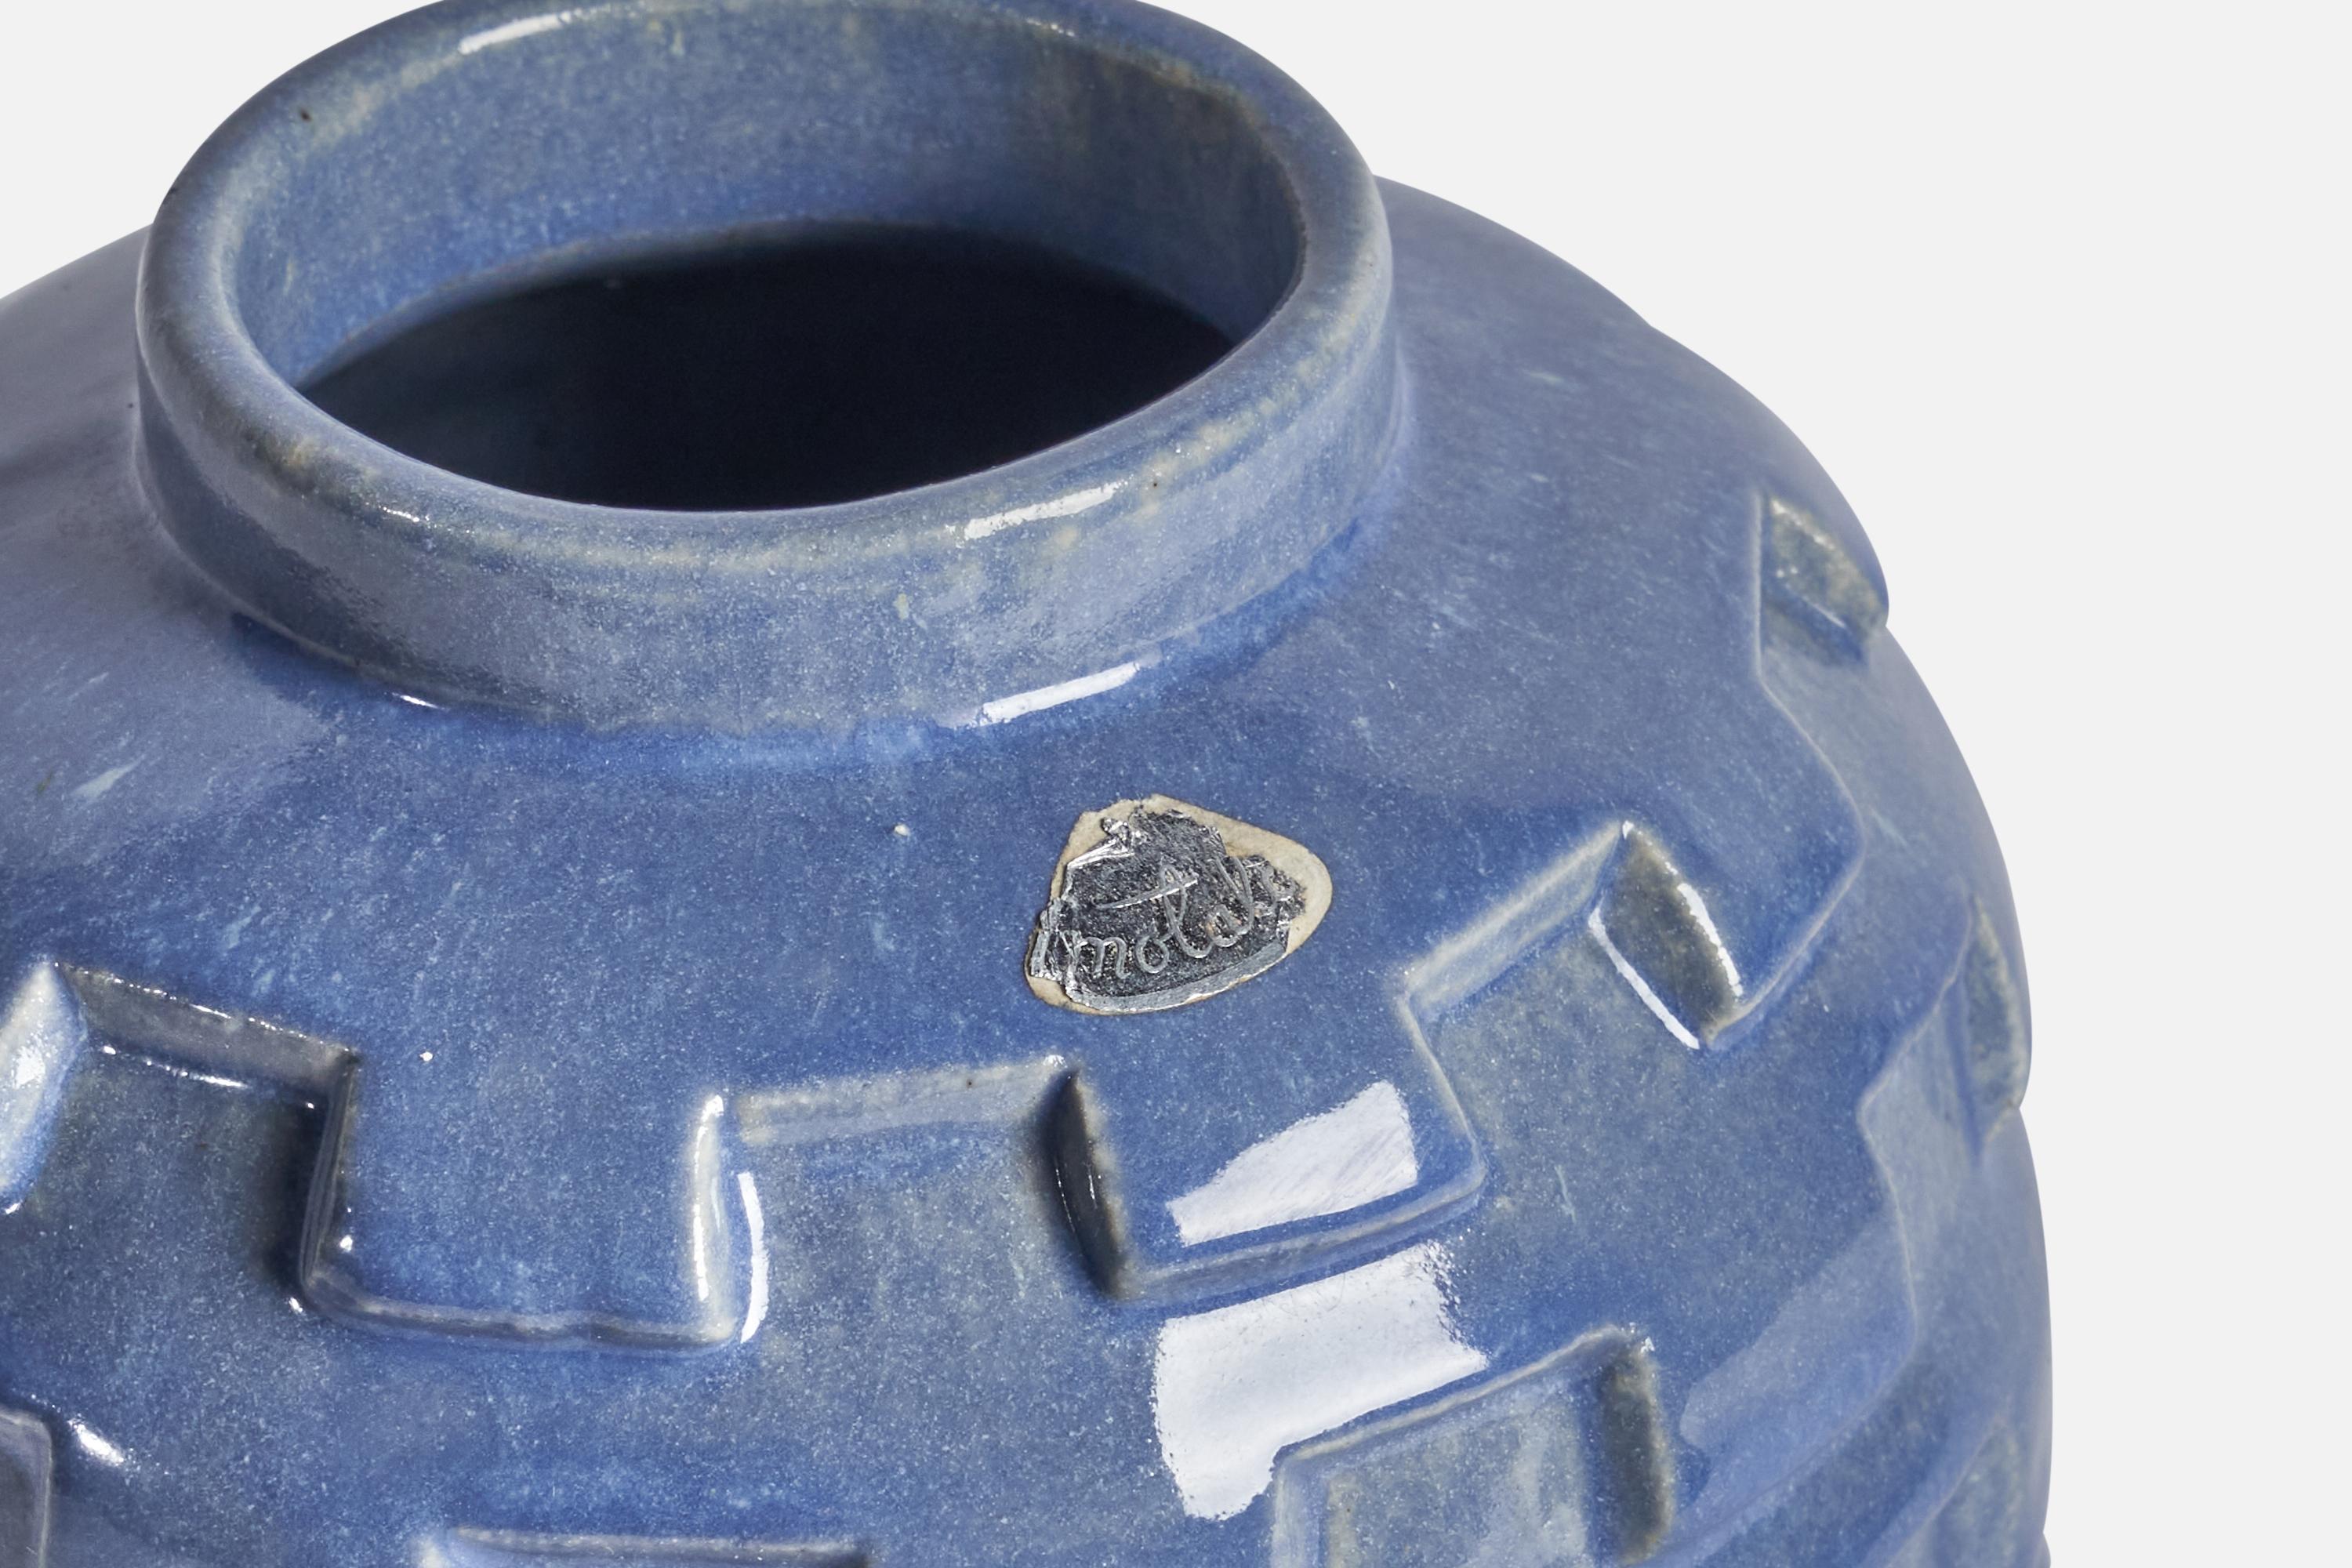 A blue-glazed earthenware vase designed and produced by Motala Lervarufabrik, Sweden, 1930s.